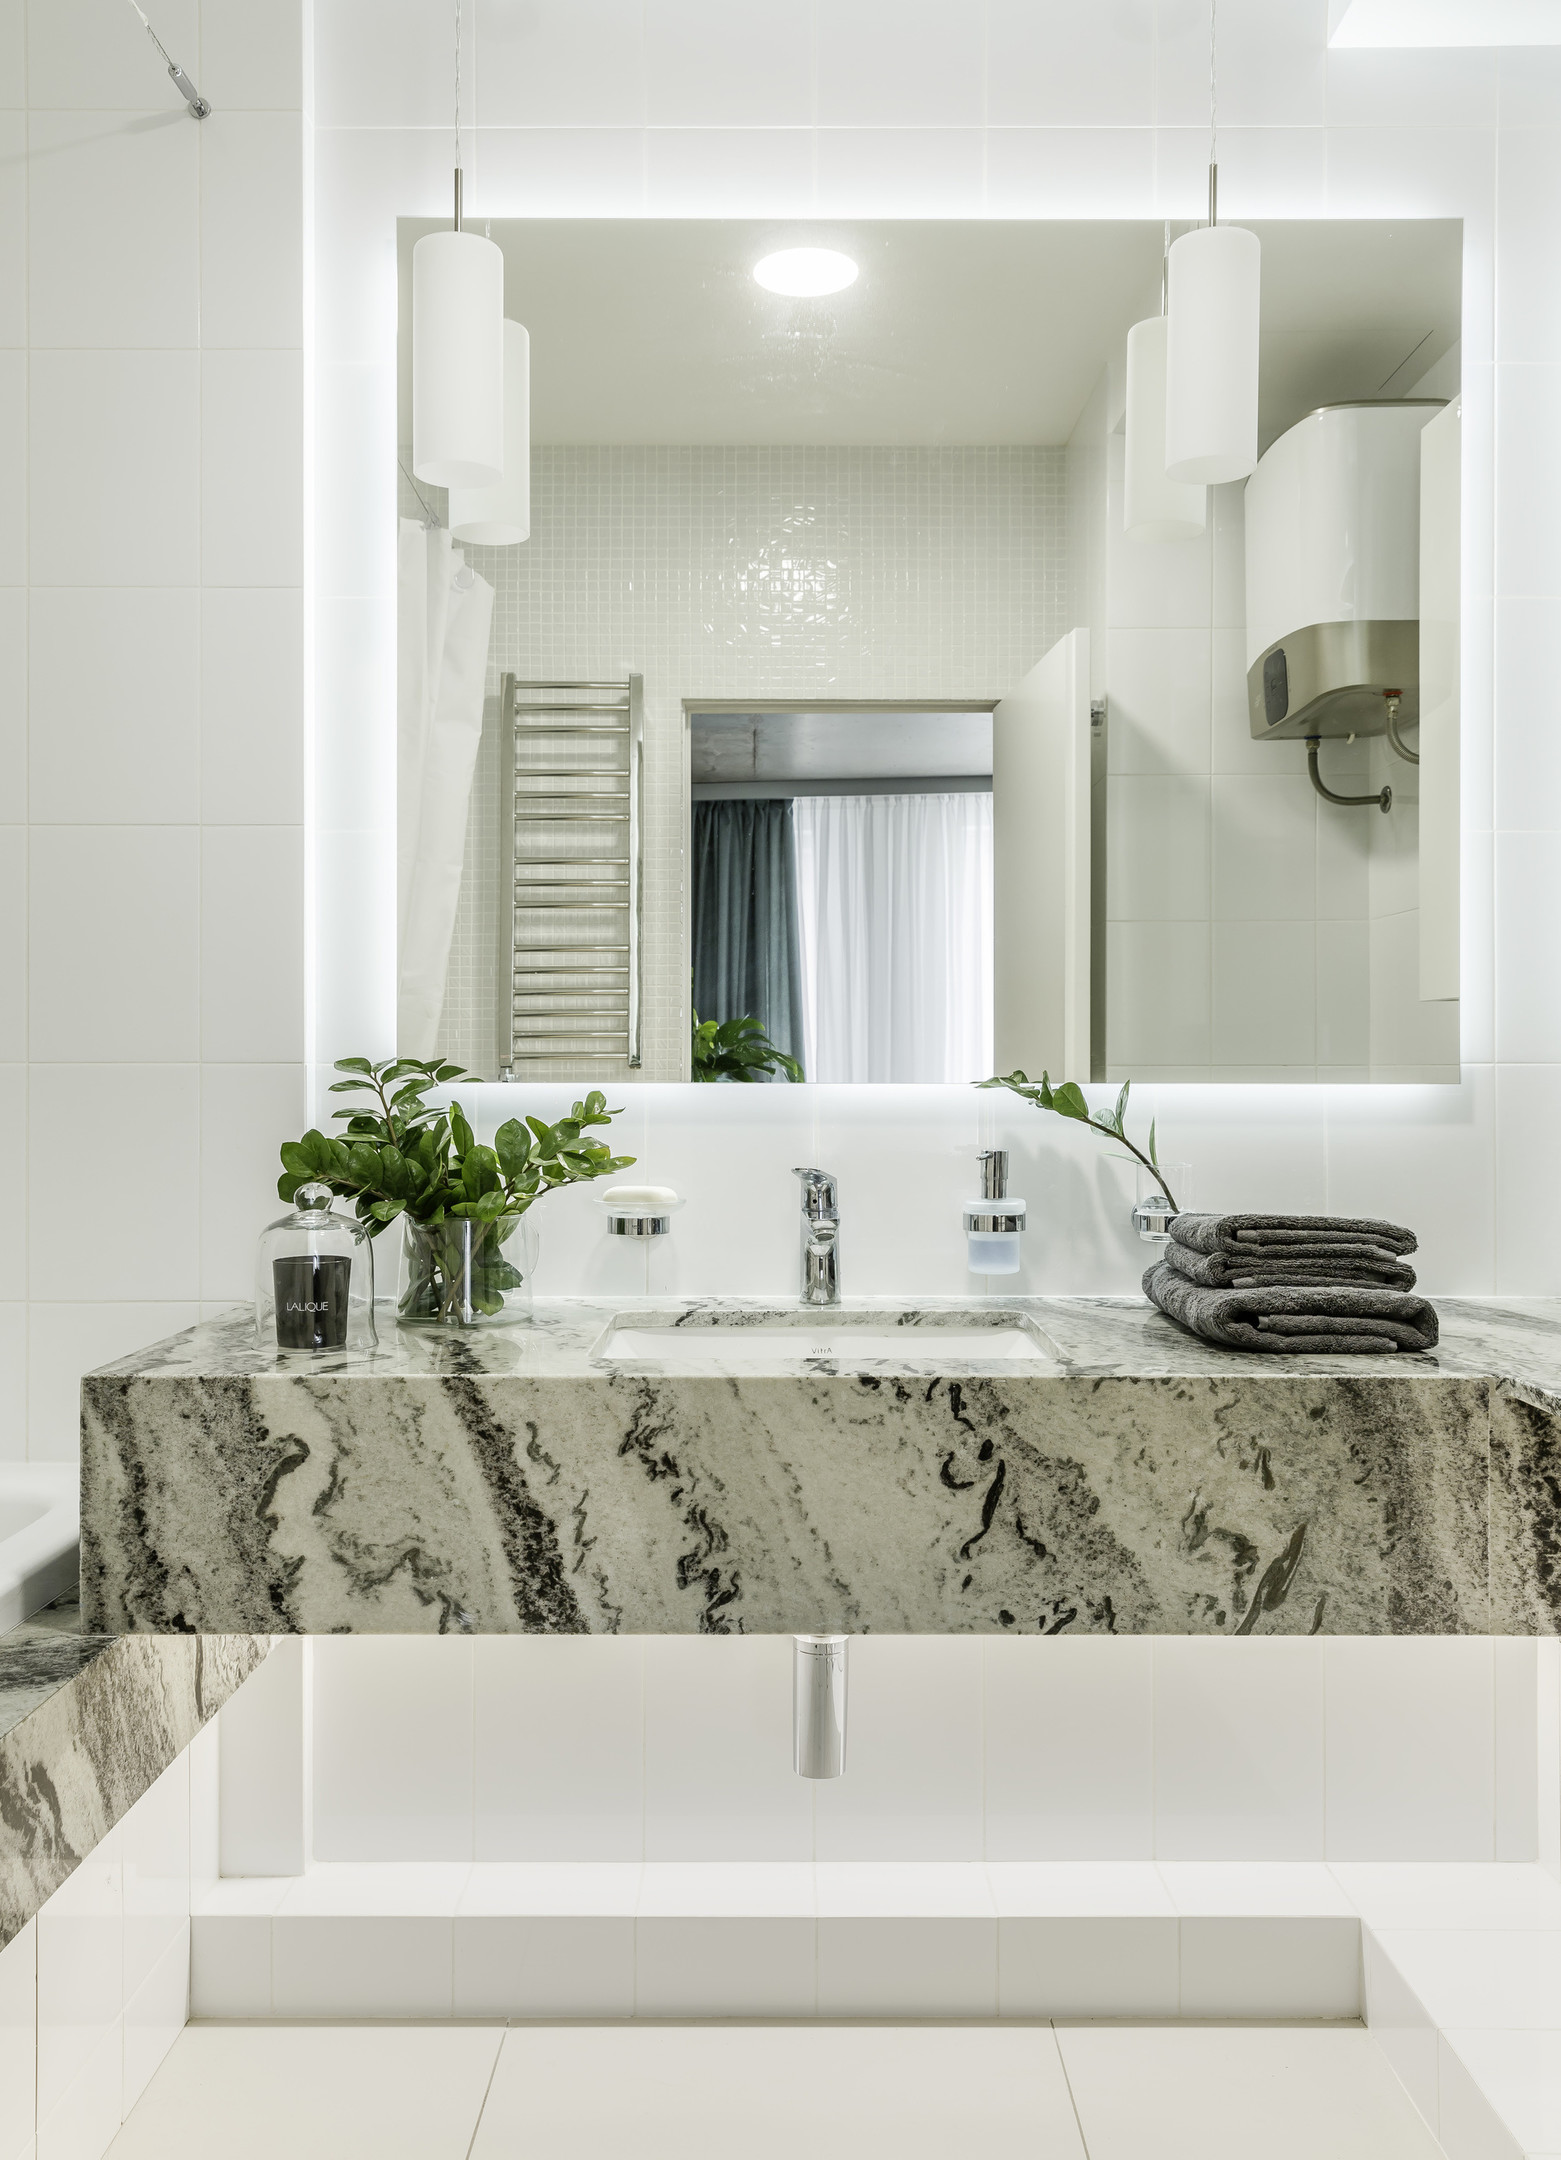 Dự án tại Moscow (Nga) do Room Design Buro thực hiện với ý tưởng sử dụng vật liệu đá cẩm thạch để thiết kế bồn rửa tay đẹp mắt, biến nó thành nét chấm phá tự nhiên, nổi bật giữa phông nền toàn sắc trắng đơn điệu trong phòng tắm.